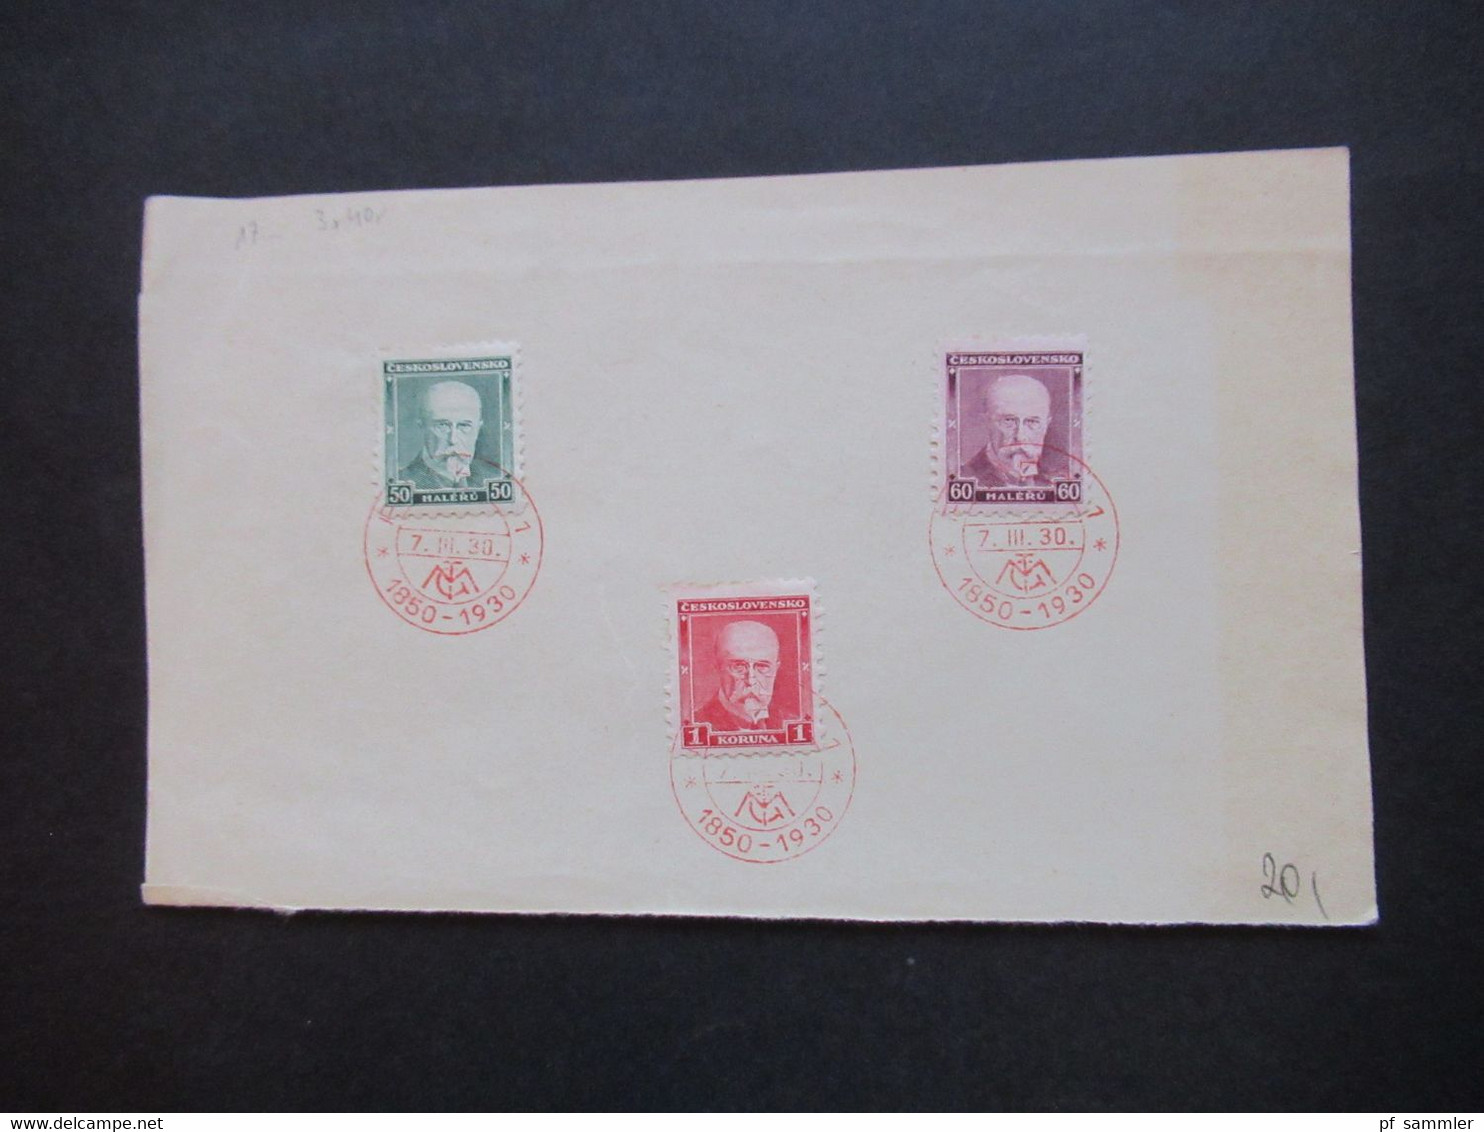 CSSR 1930 Freimarken Präsident Massaryk Nr.295 / 297 Blanko Zettel Mit Rotem Sonderstempel Praha 1 1850 - 1930 - Covers & Documents